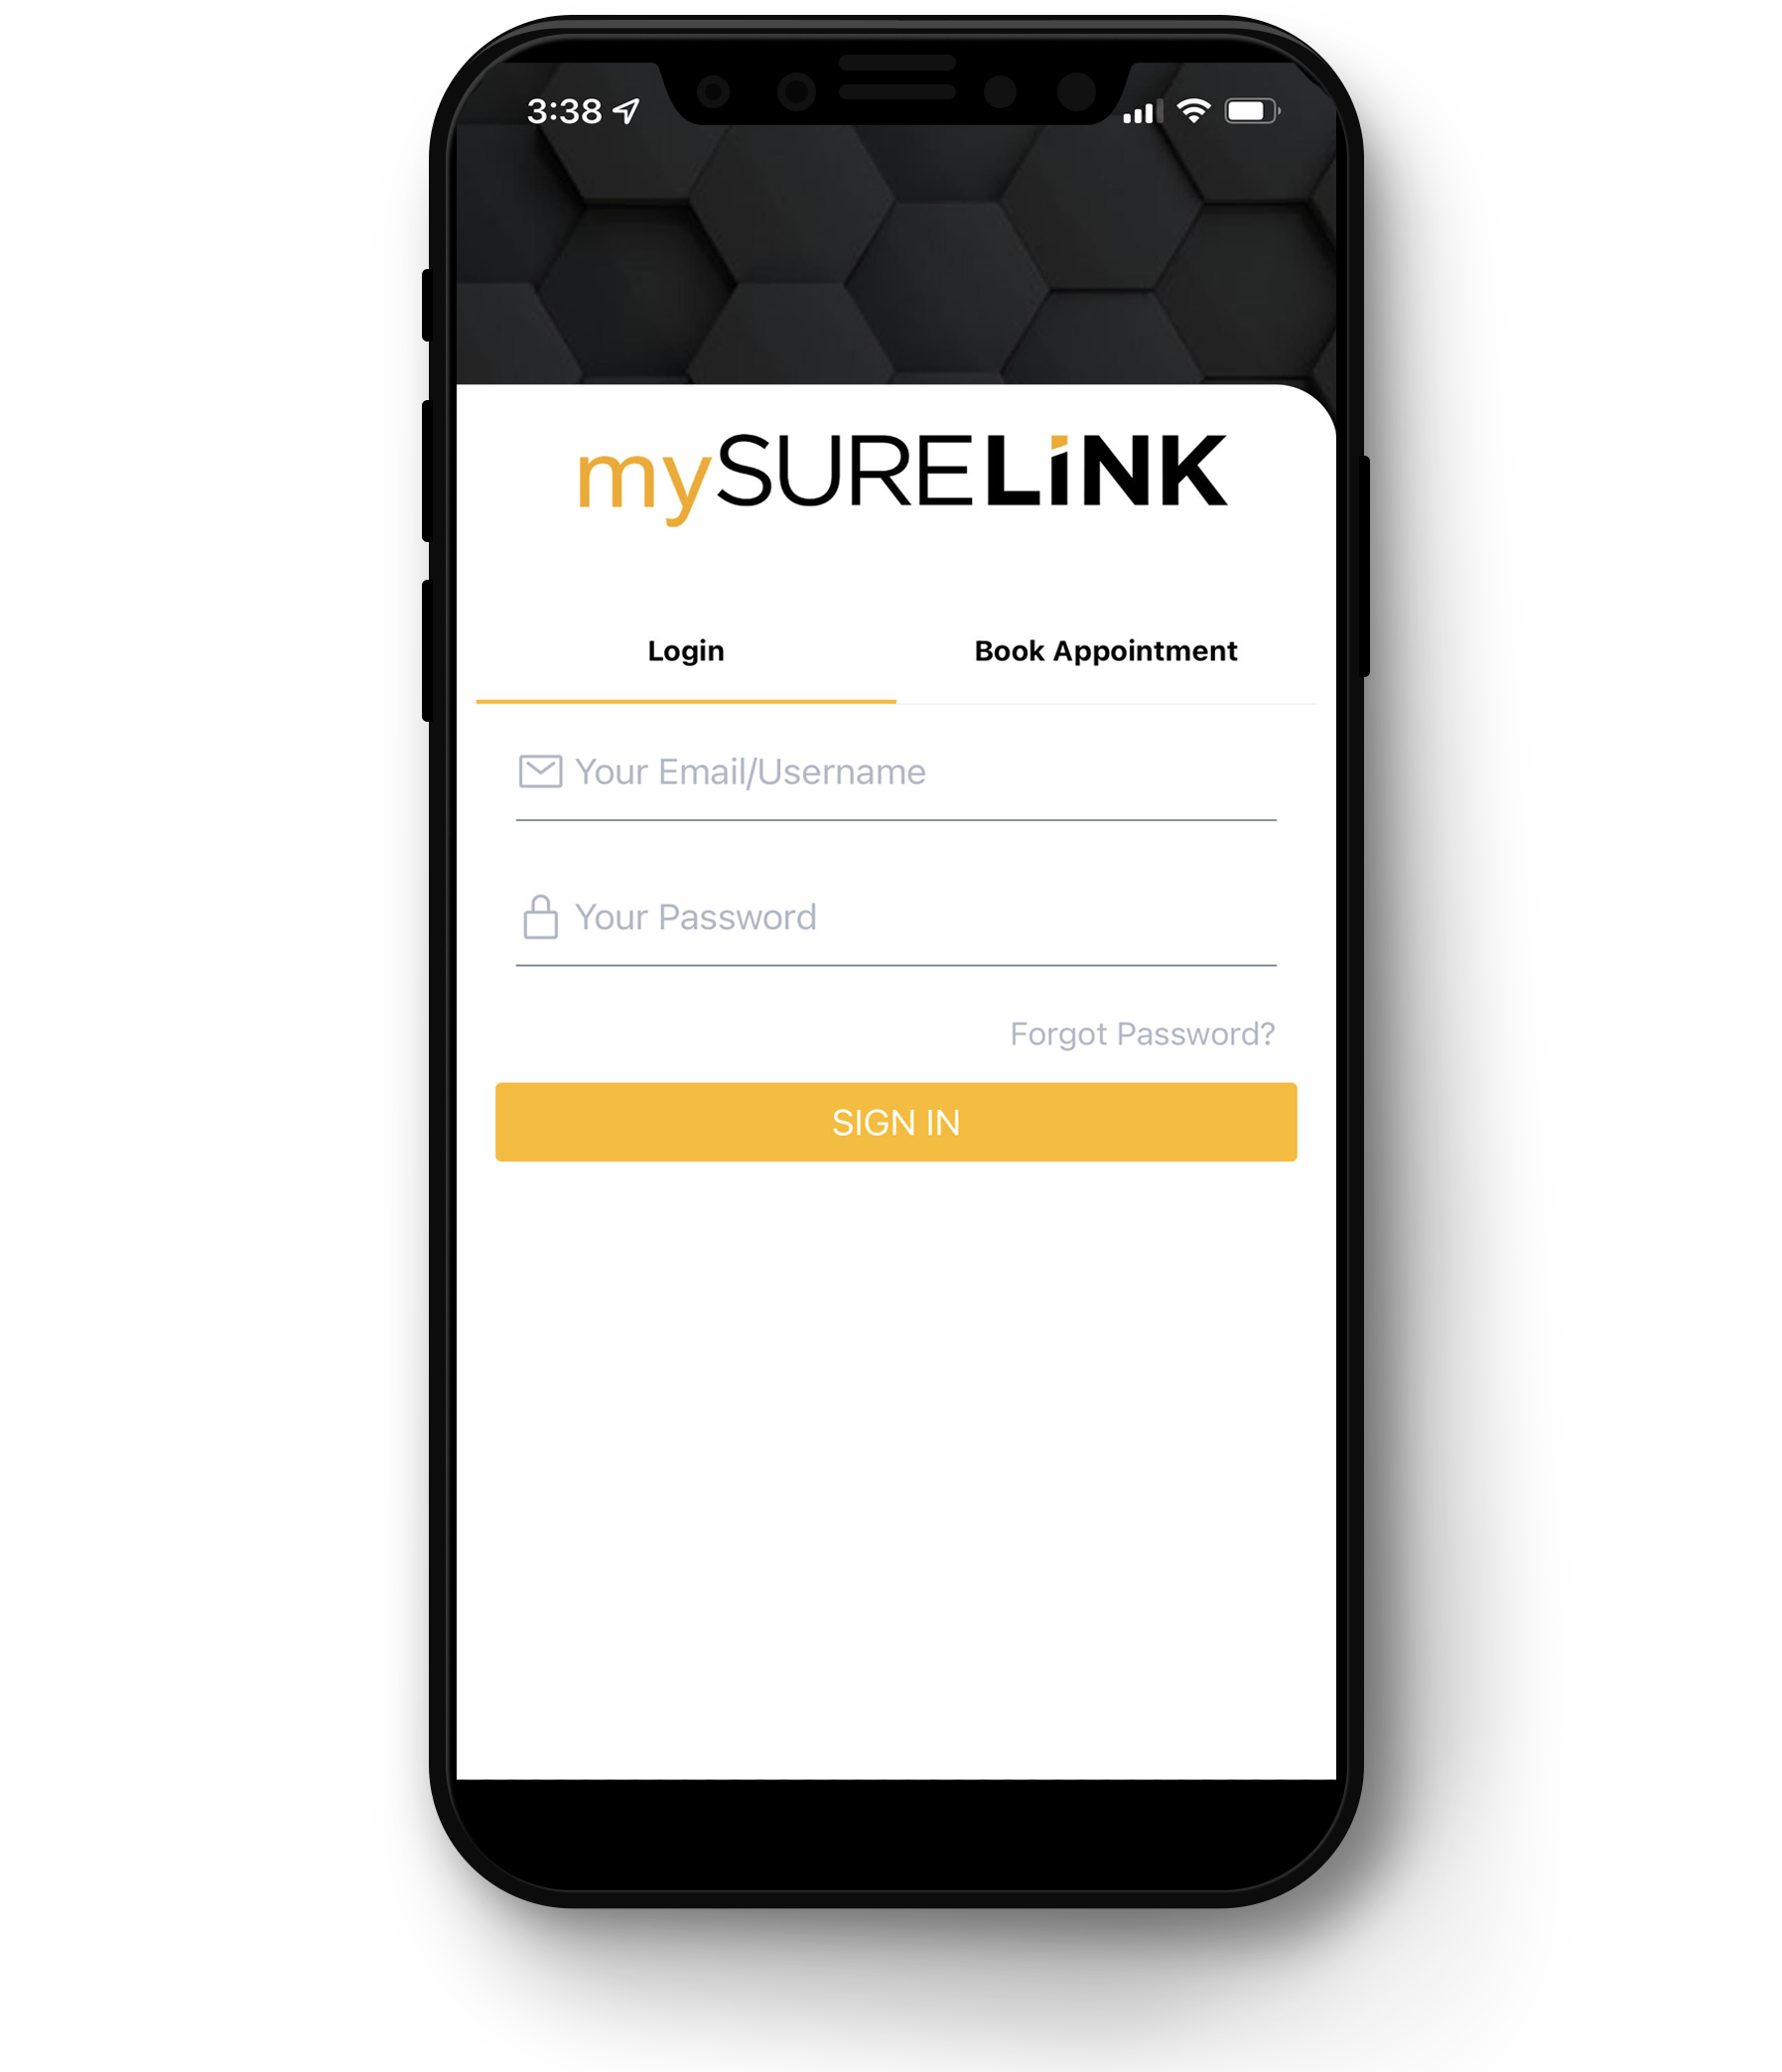 mySureLink App login screen on iphone